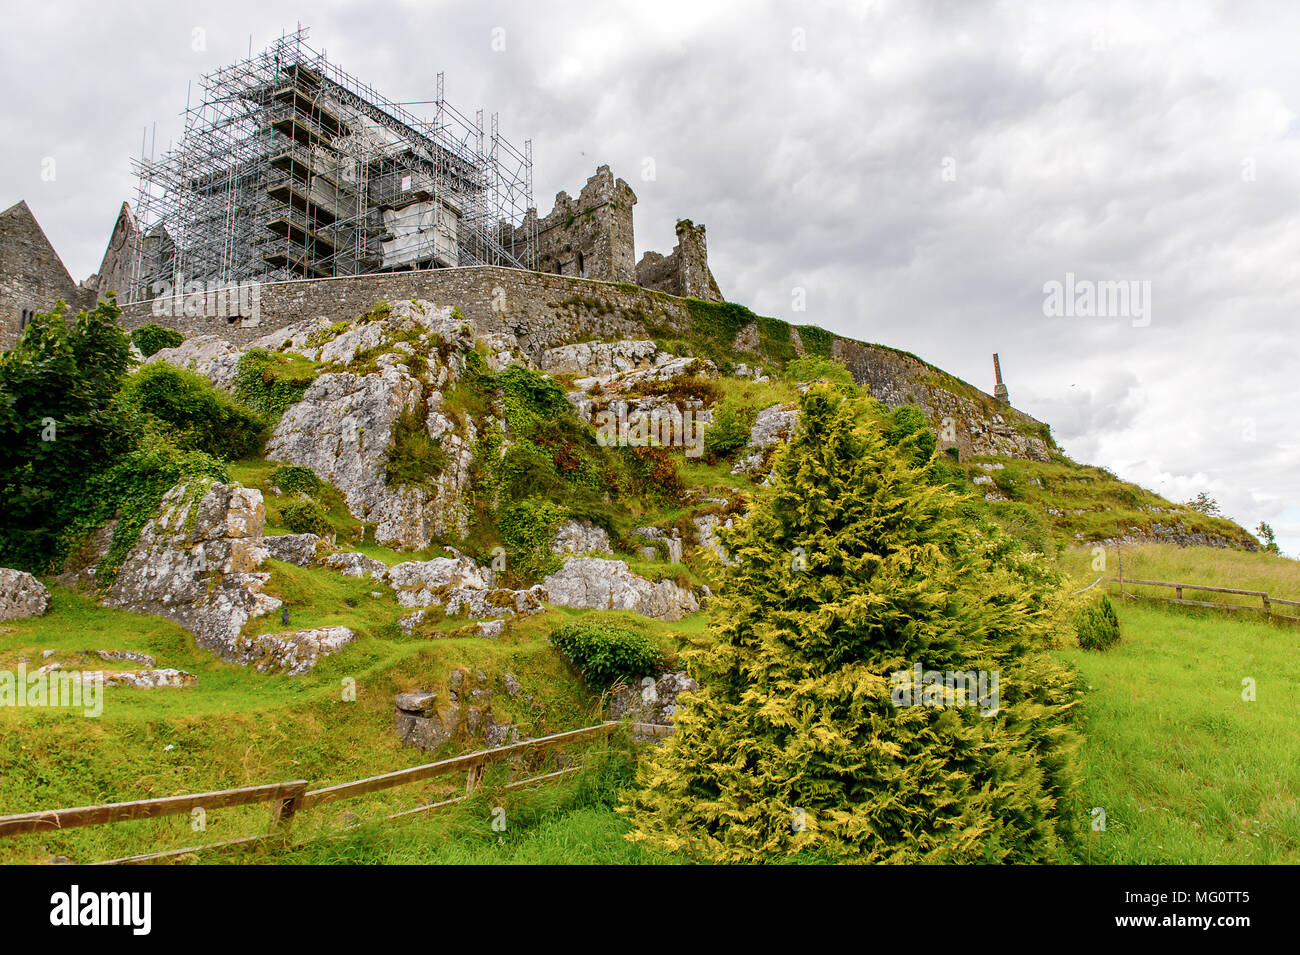 Rock of Cashel Carraig Phadraig), Cashel der Könige und St. Patrick's Rock, ist ein historischer Ort in County Tipperary, Irland Stockfoto